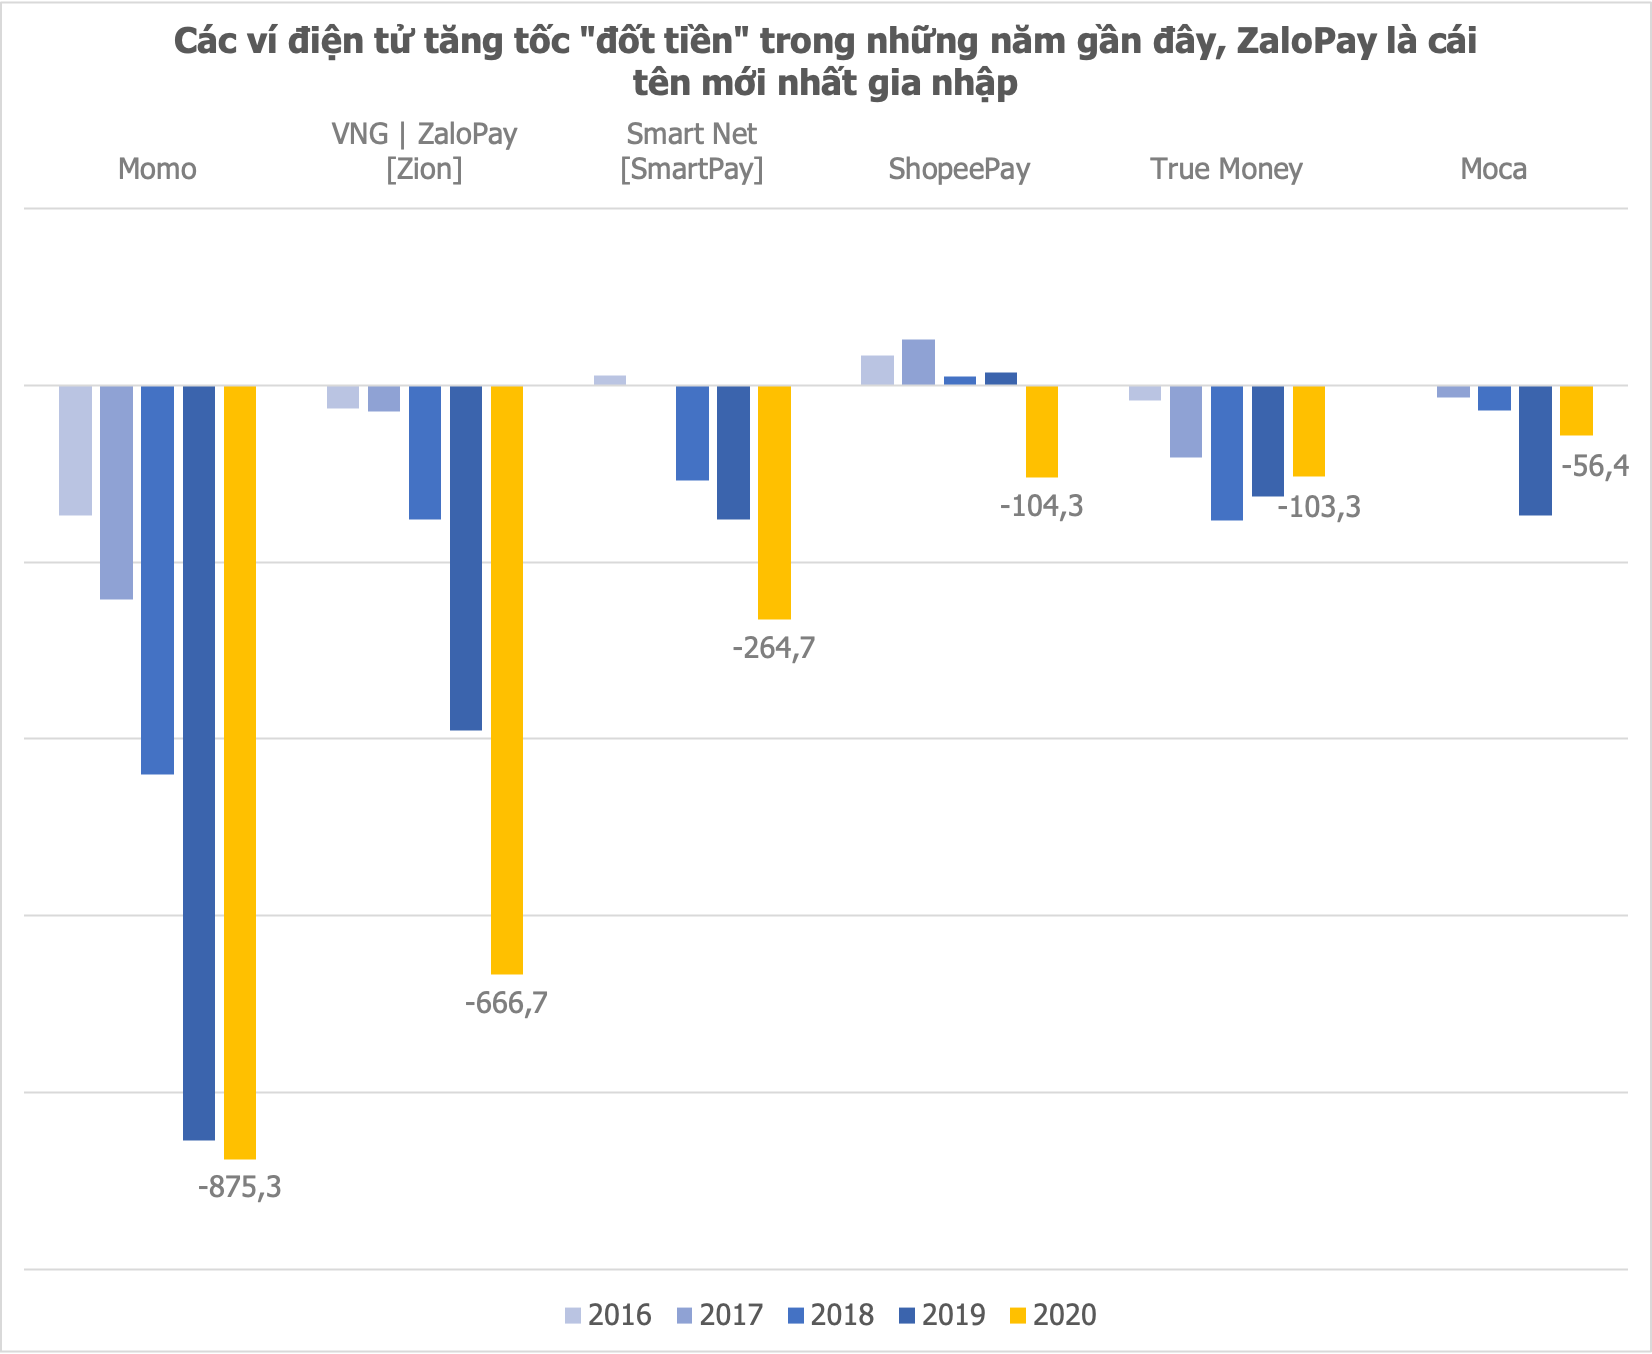 Mức lỗ của ZaloPay tăng mạnh lên 840 tỷ đồng trong 9 tháng, ngang ngửa số lỗ của MoMo cả năm 2020.